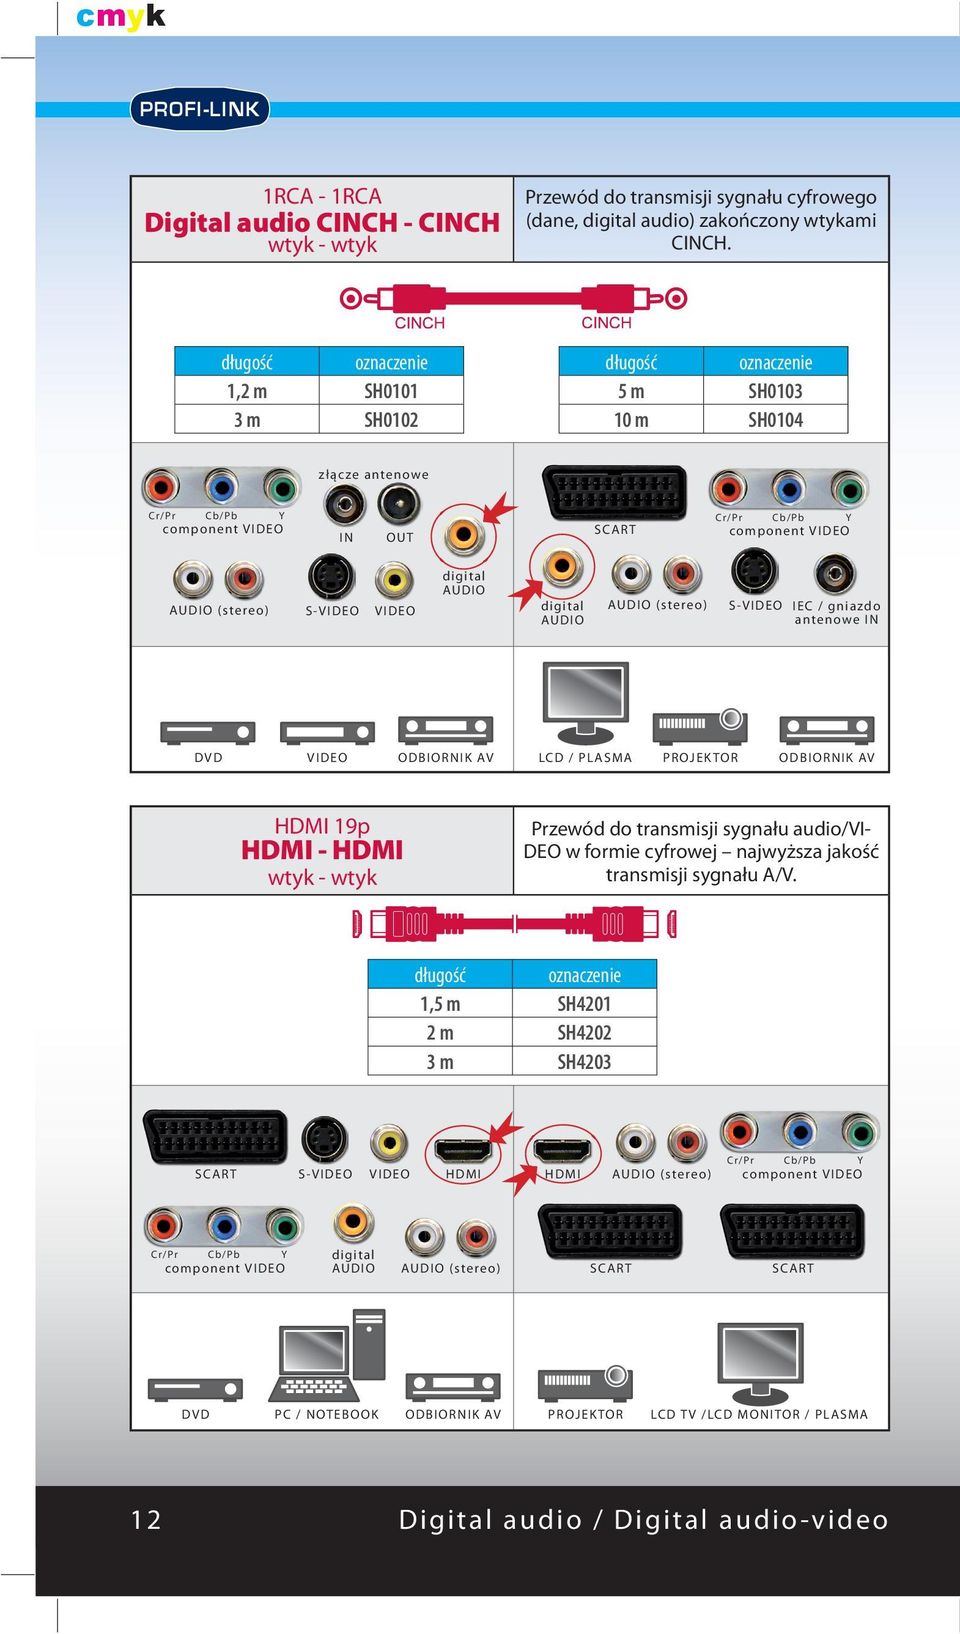 ODBIORNIK AV HDMI 19p HDMI - HDMI Przewód do transmisji sygnału audio/vi- DEO w formie cyfrowej najwyższa jakość transmisji sygnału